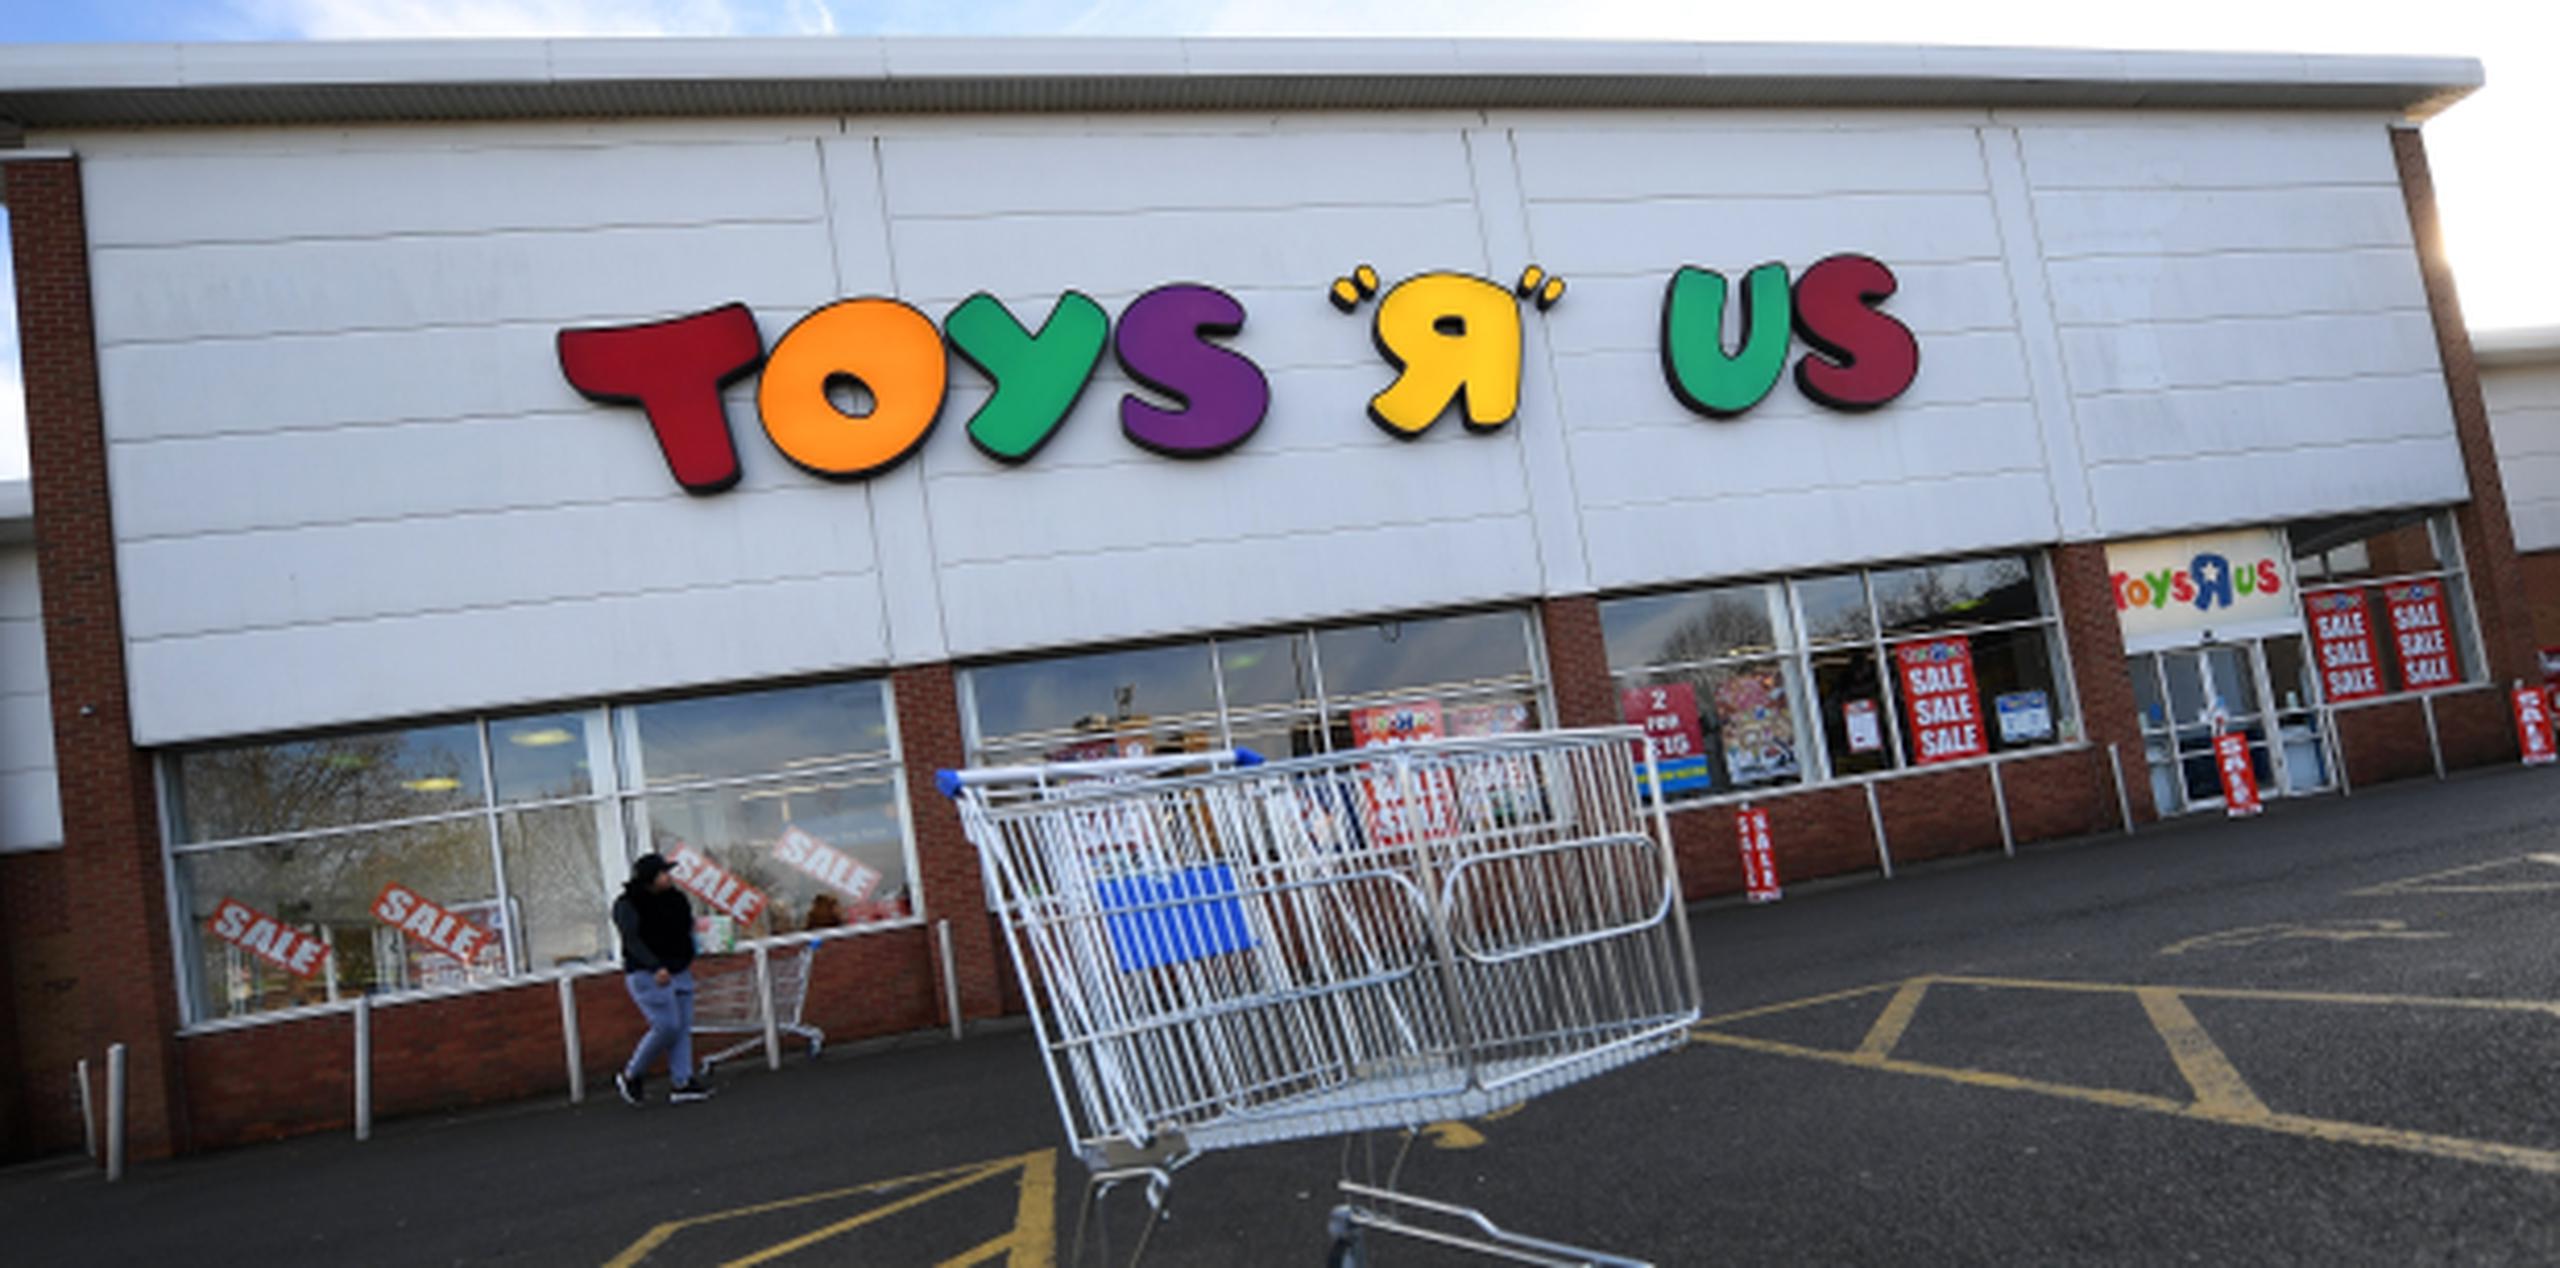 La semana pasada, Toys R Us pidió a la corte permiso para liquidar el resto de sus tiendas en Estados Unidos, poniendo en riesgo unos 30,000 empleos. (EFE)